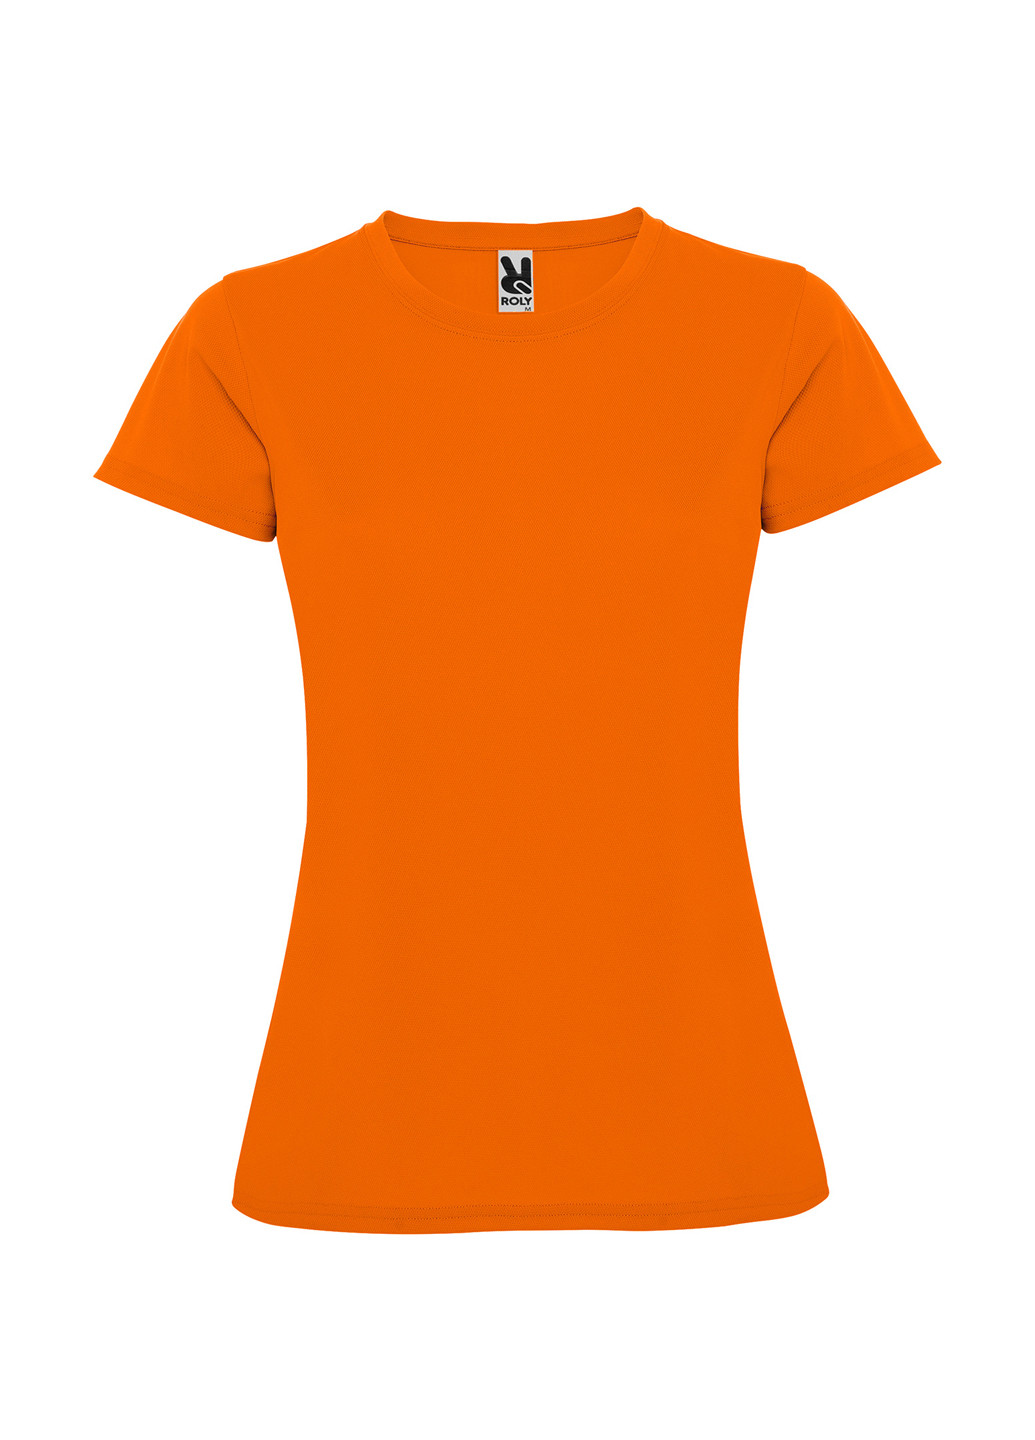 Оранжевая летняя футболка с коротким рукавом Roly